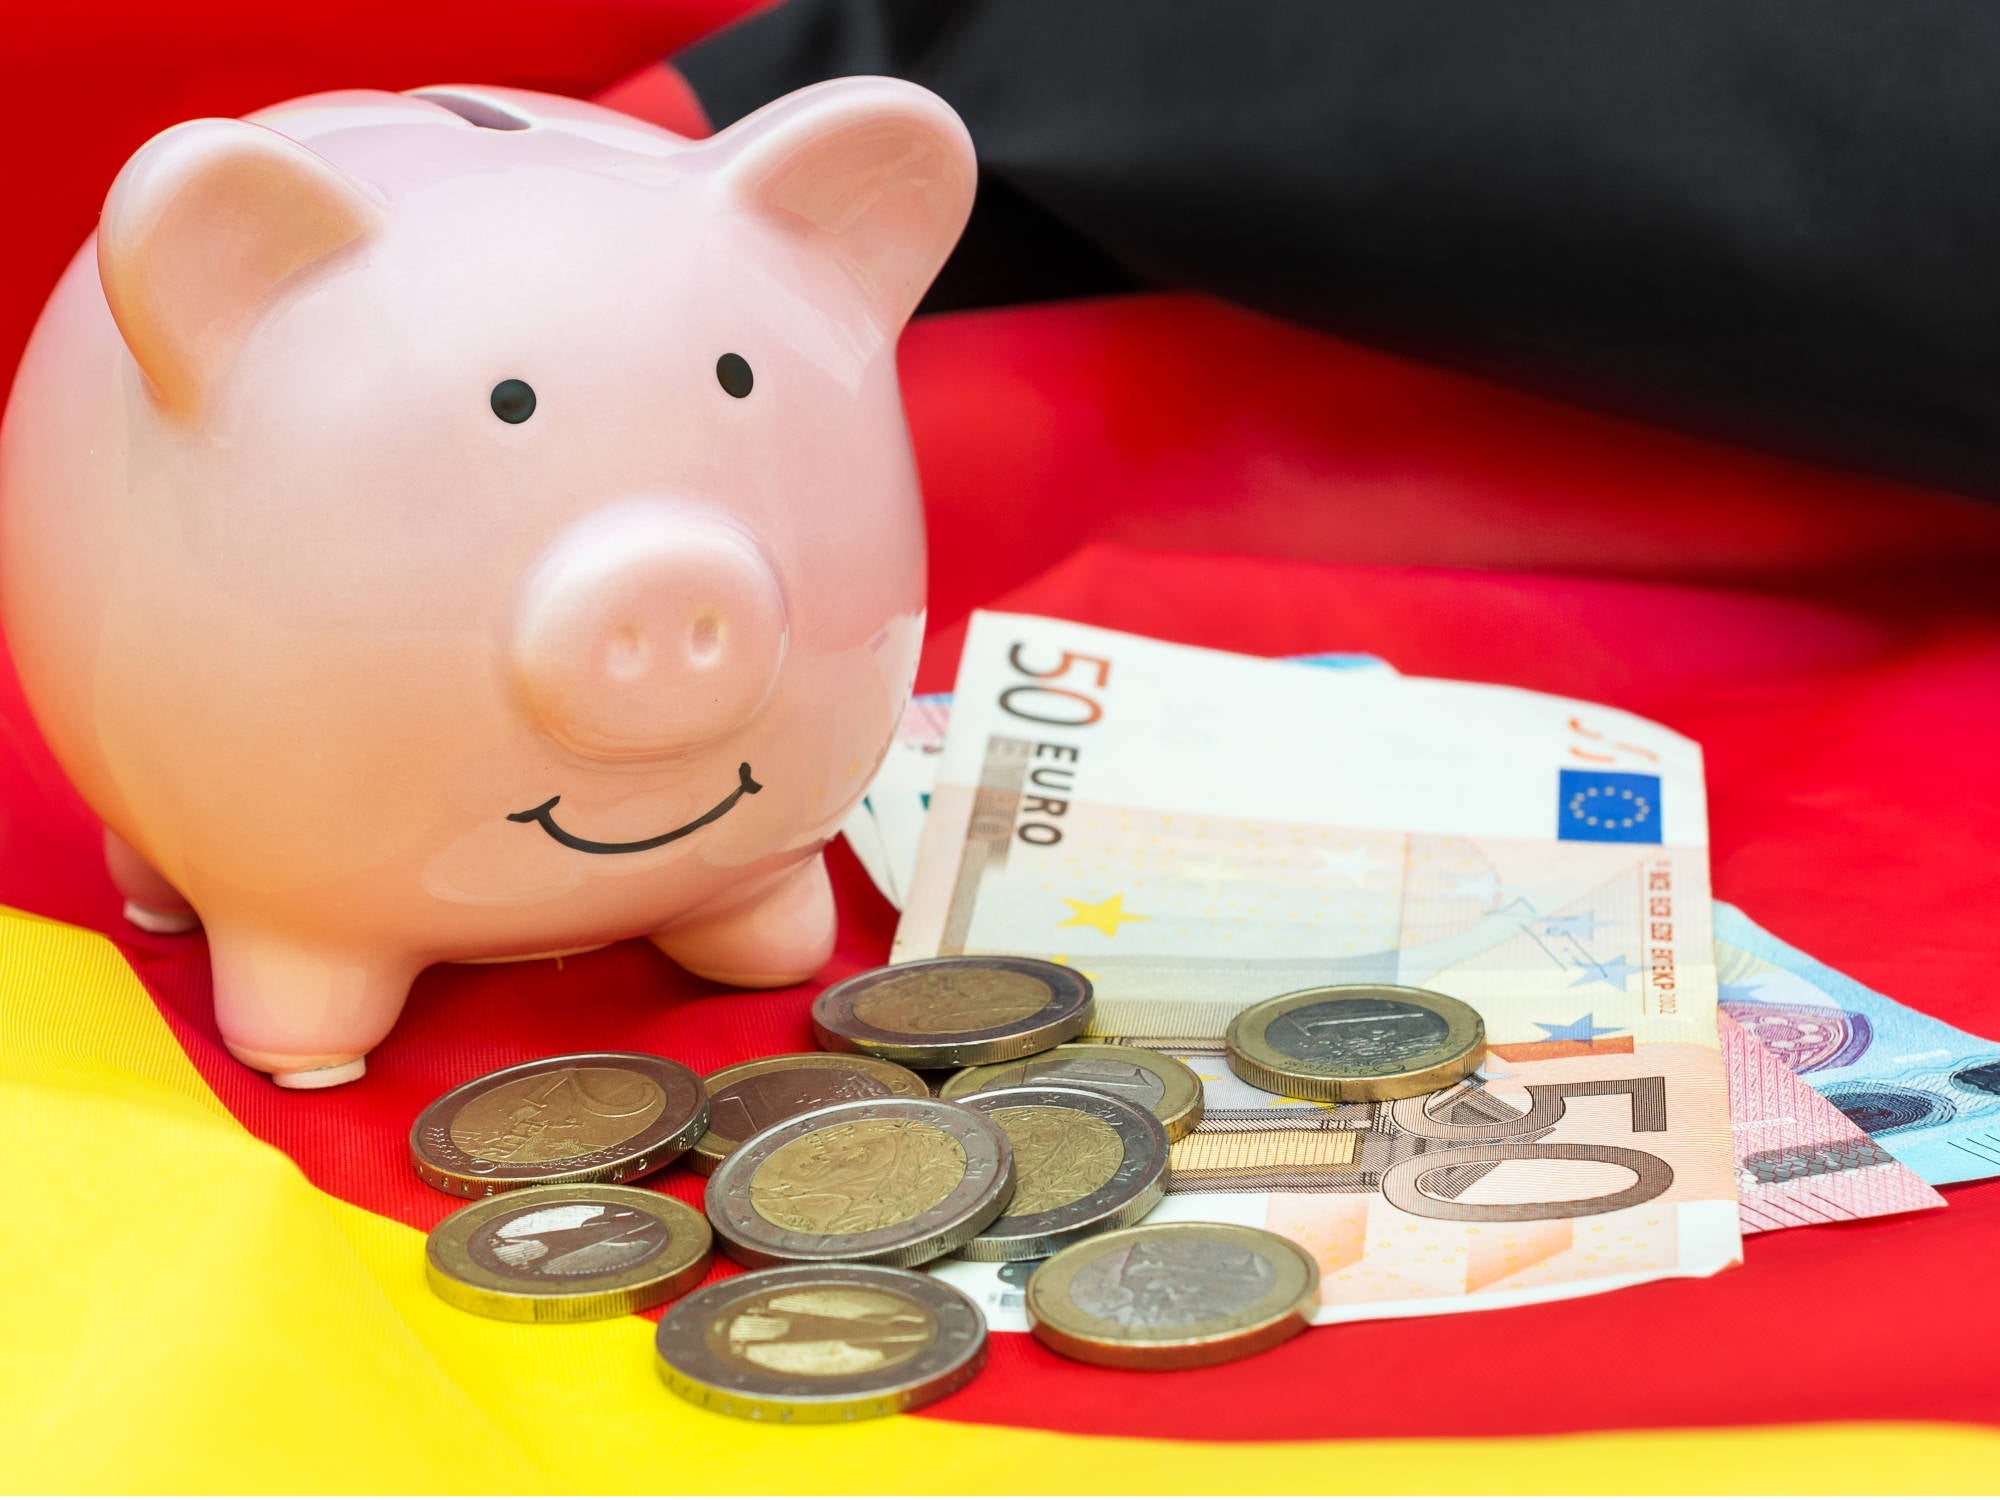 #Geld sparen in 2023: Mit diesen Tipps sparst du noch dieses Jahr hunderte Euro